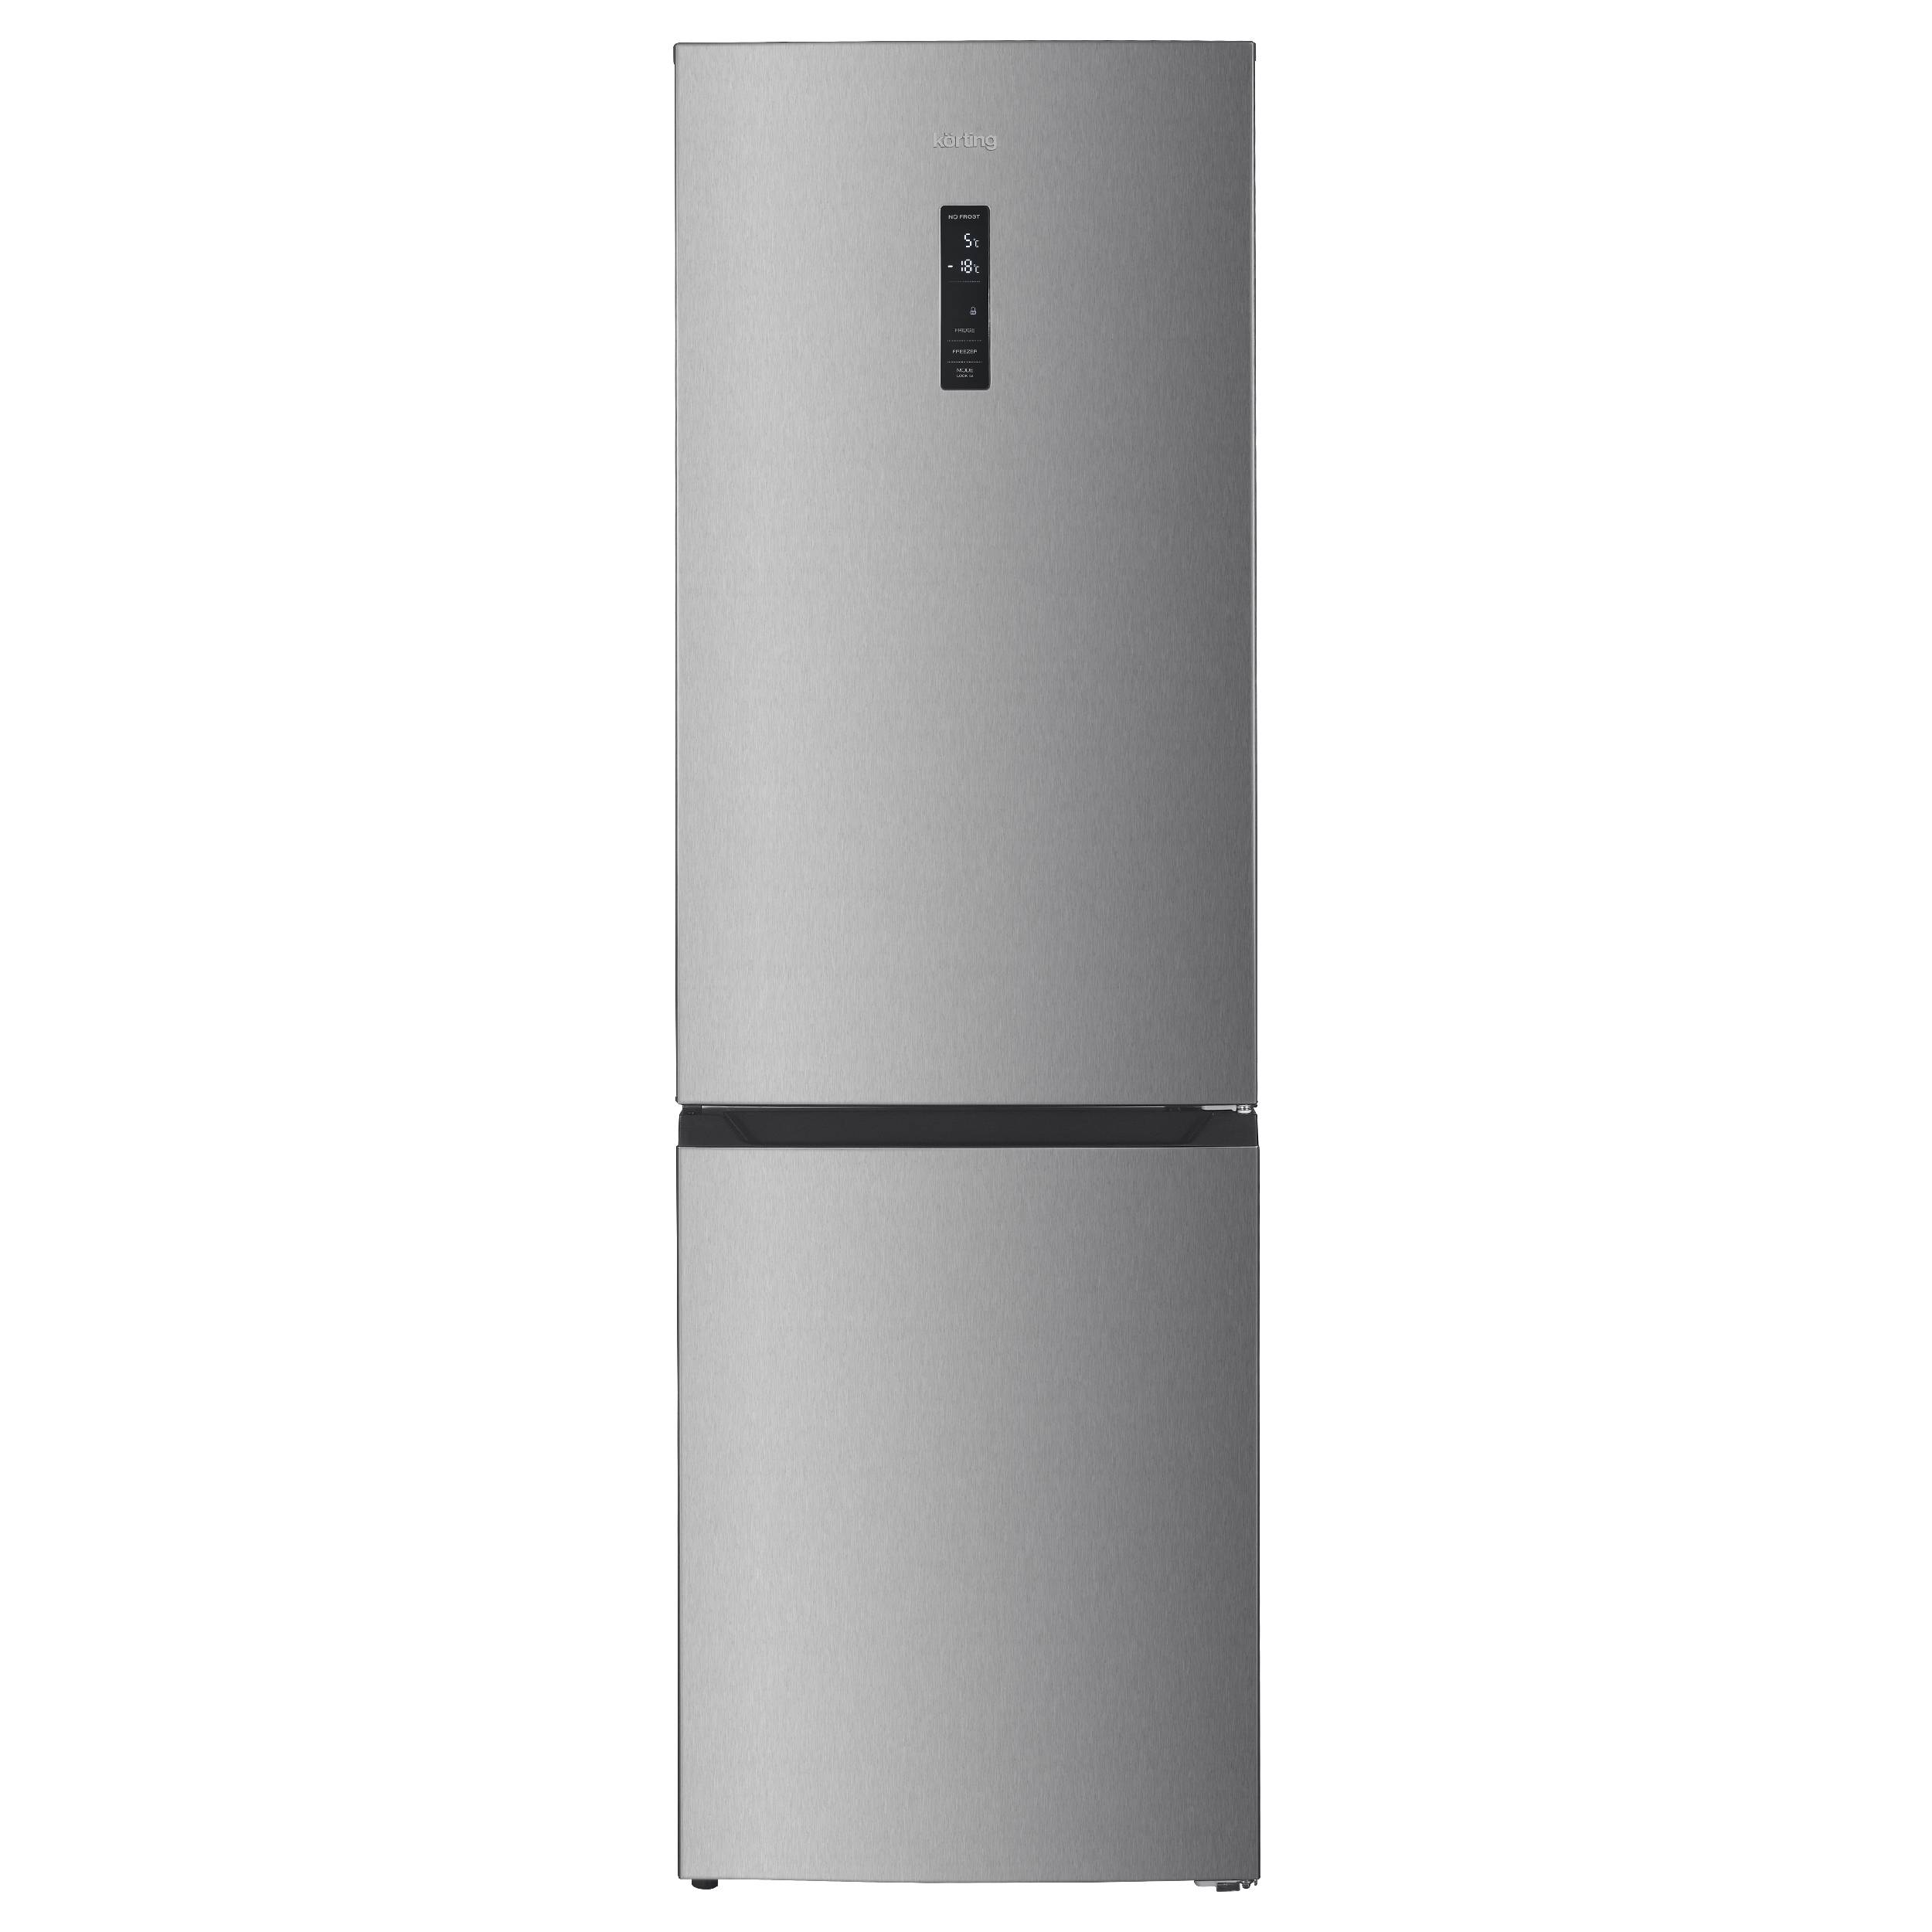 Холодильник Korting KNFC 62980 X серебристый, серый холодильник lex lsb 520 dsid серый